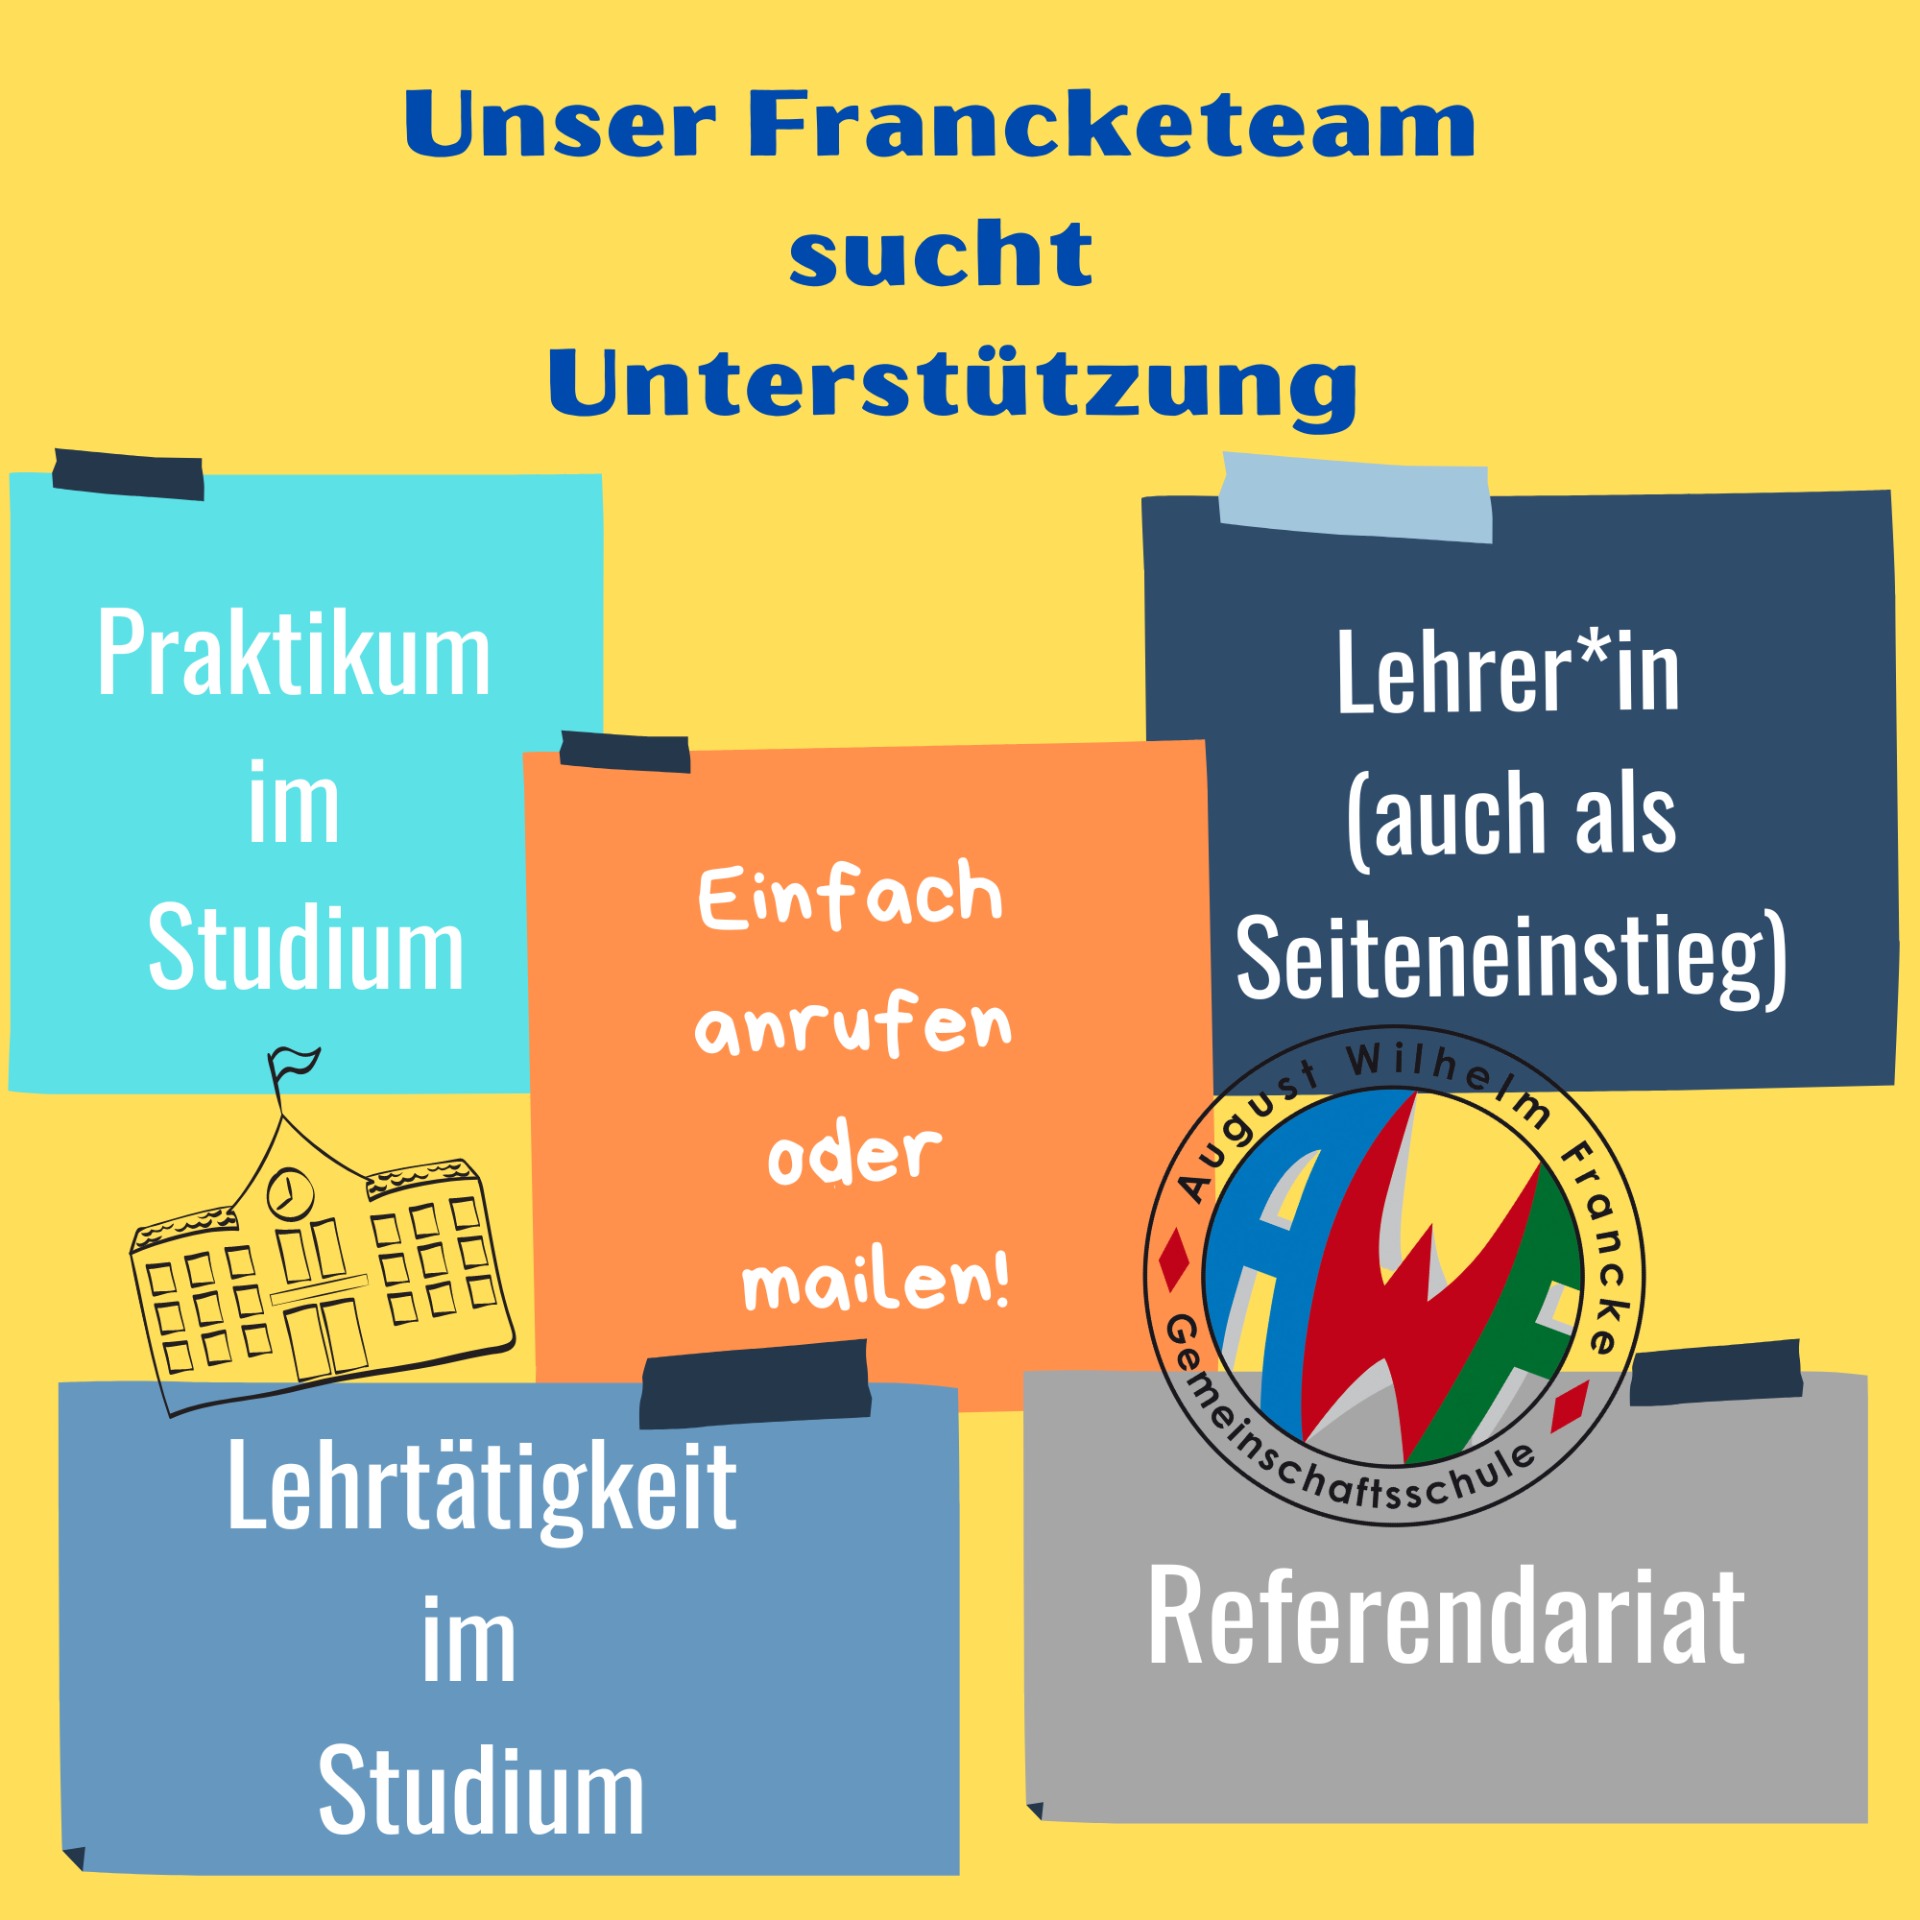 Francketeam sucht Unterstützung - Bild 1